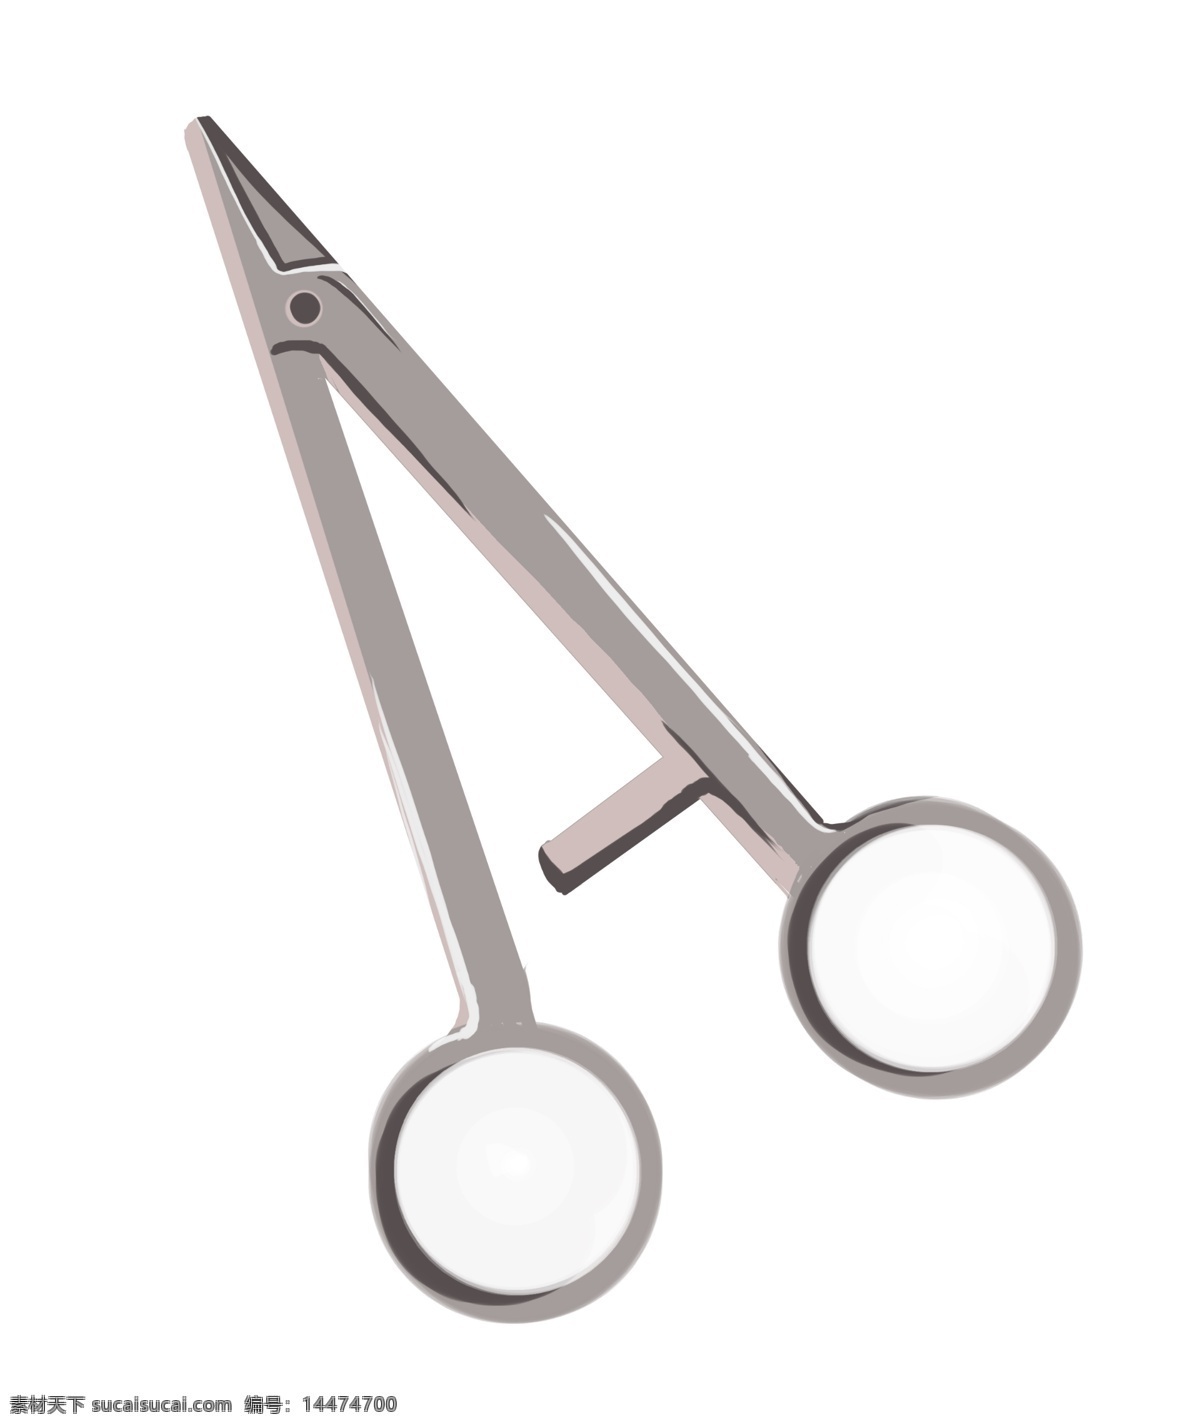 金属手术剪刀 医疗用品 金属 剪刀